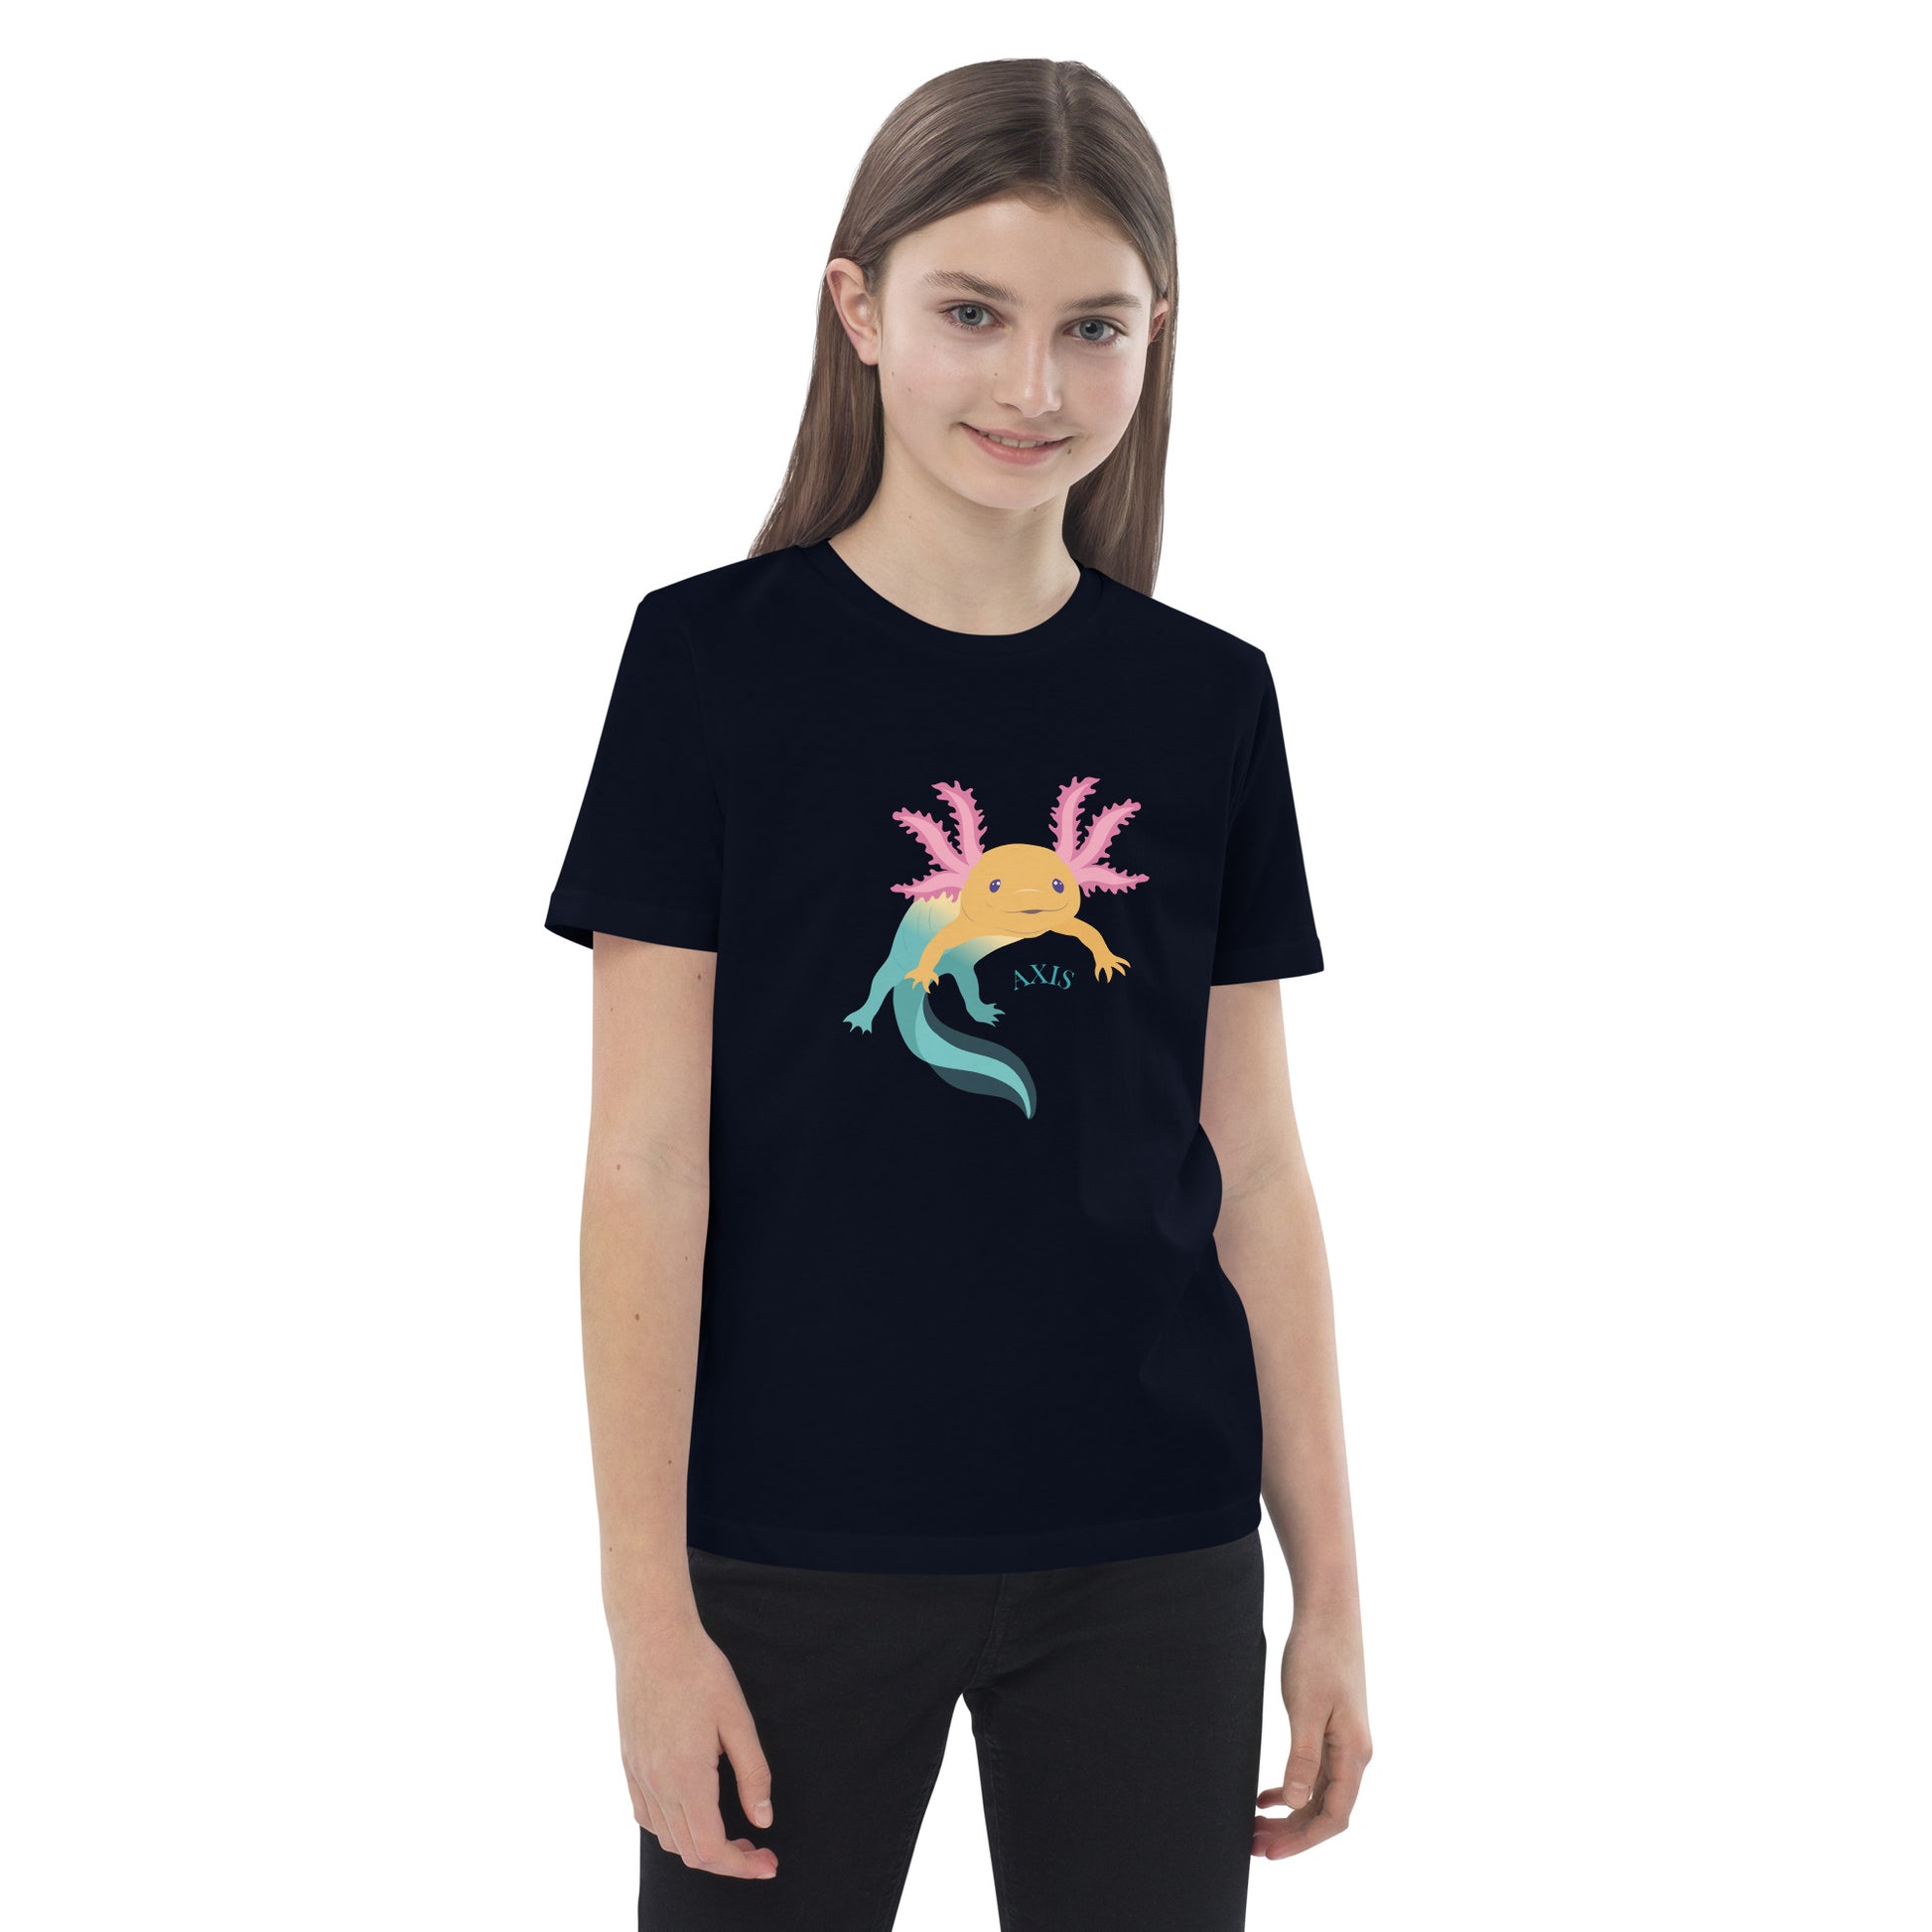 Barn T-shirt i färgen marinblå. Ekologisk bomull och tryck med axolotlen Axis.